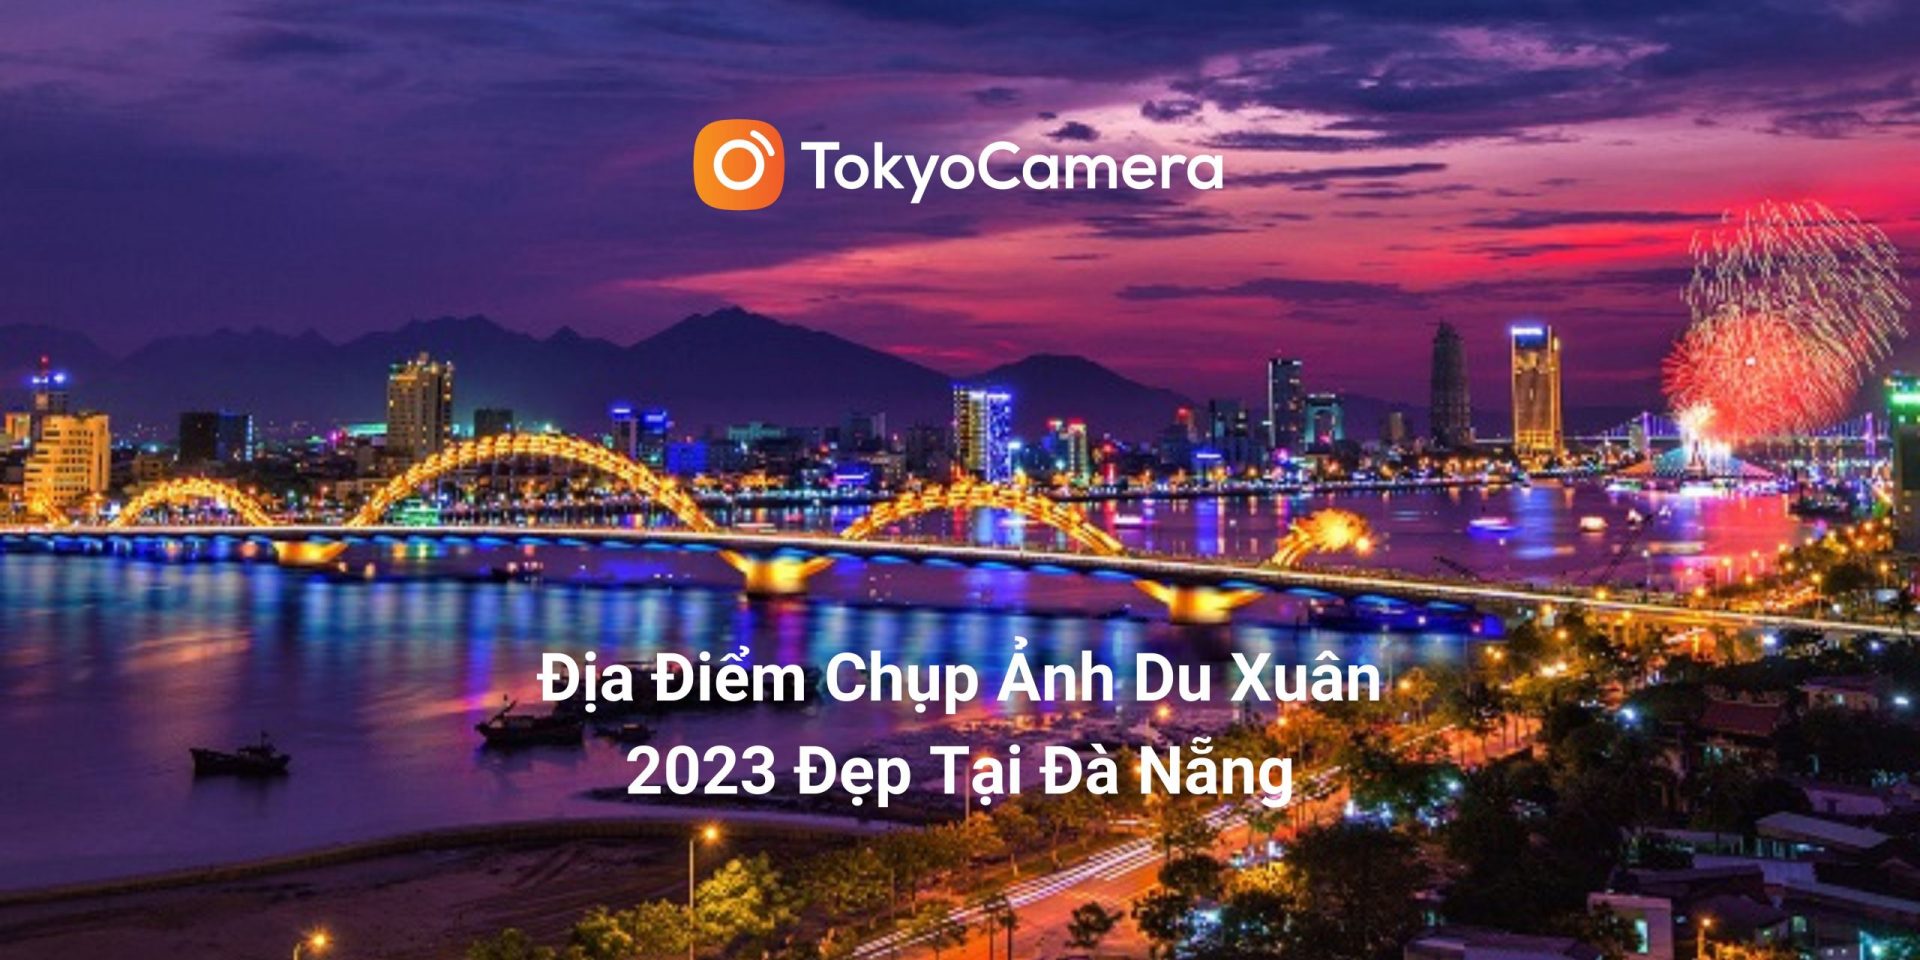 Địa điểm chụp ảnh Tết đẹp Đà Nẵng khi du xuân 2023 - Tokyo Camera